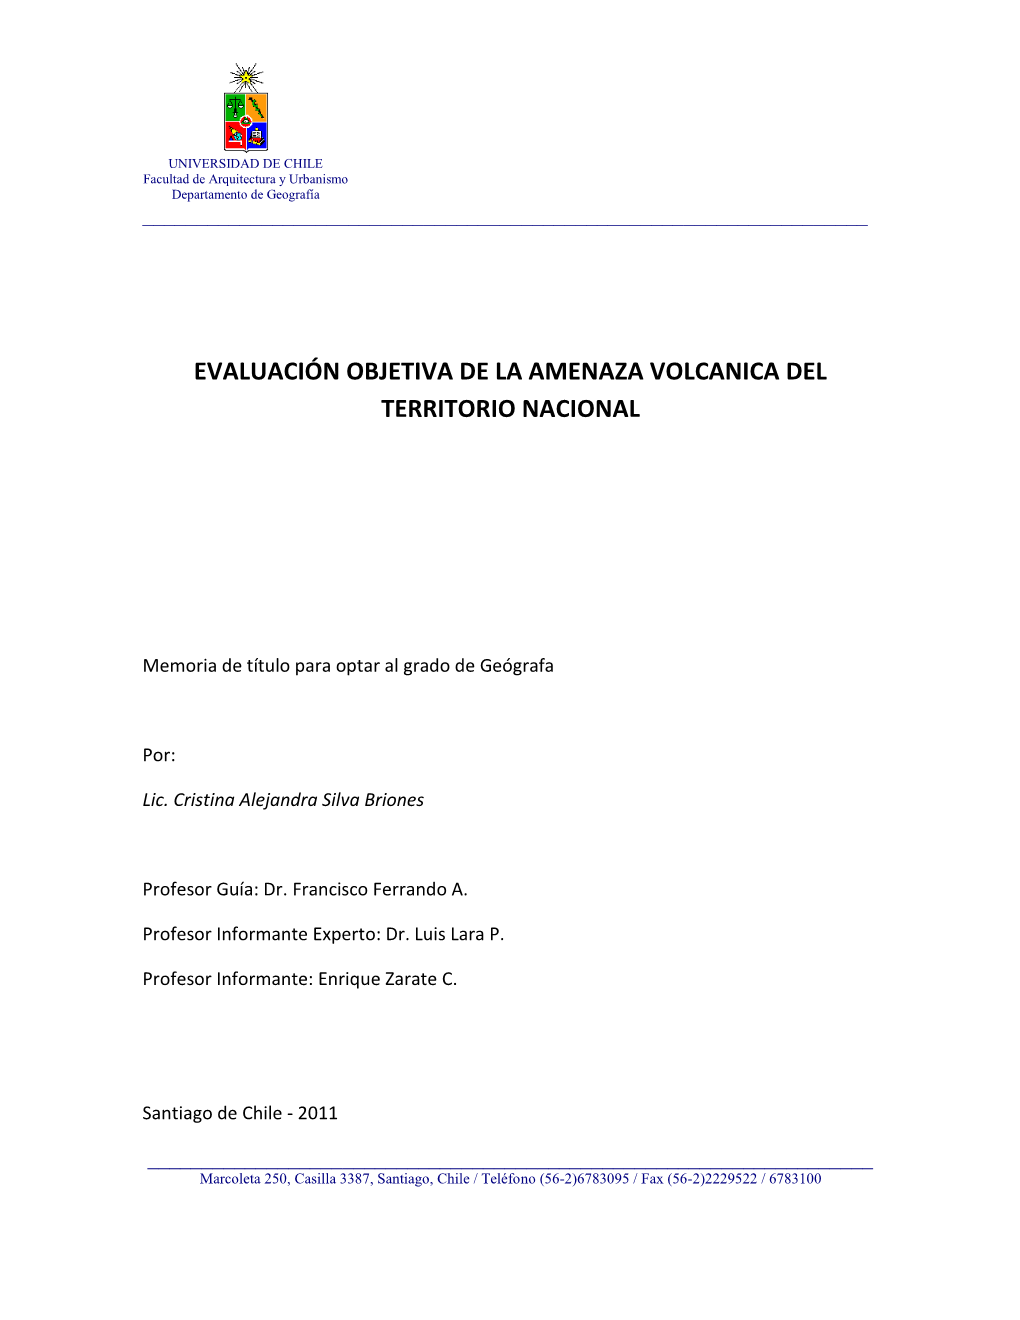 Evaluación Objetiva De La Amenaza Volcanica Del Territorio Nacional